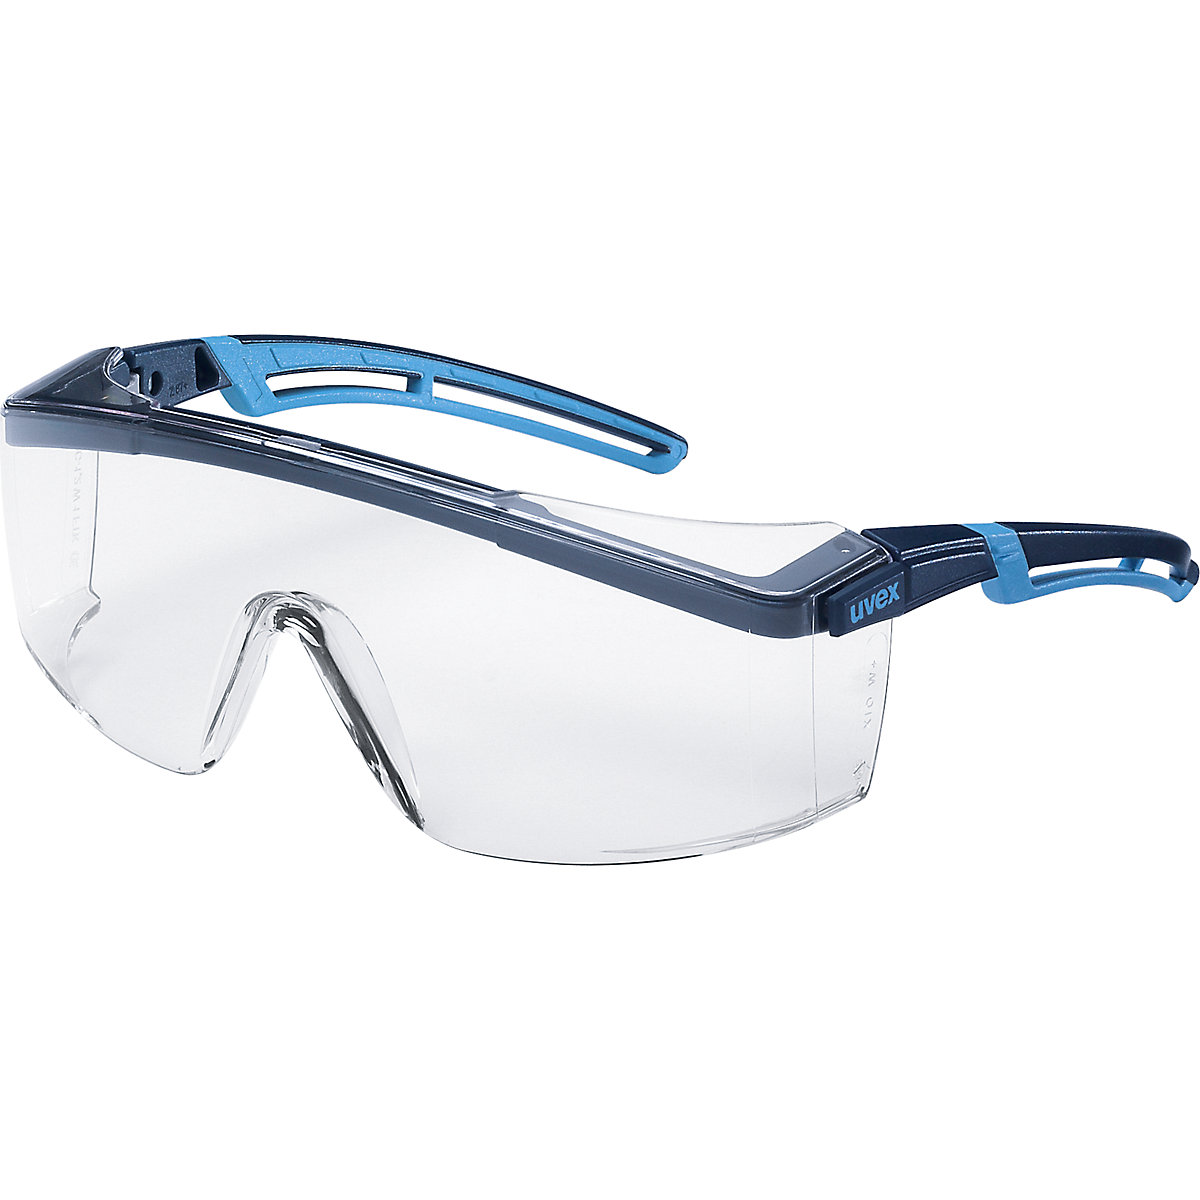 Ochranné okuliare atrospec 2.0 - Uvex